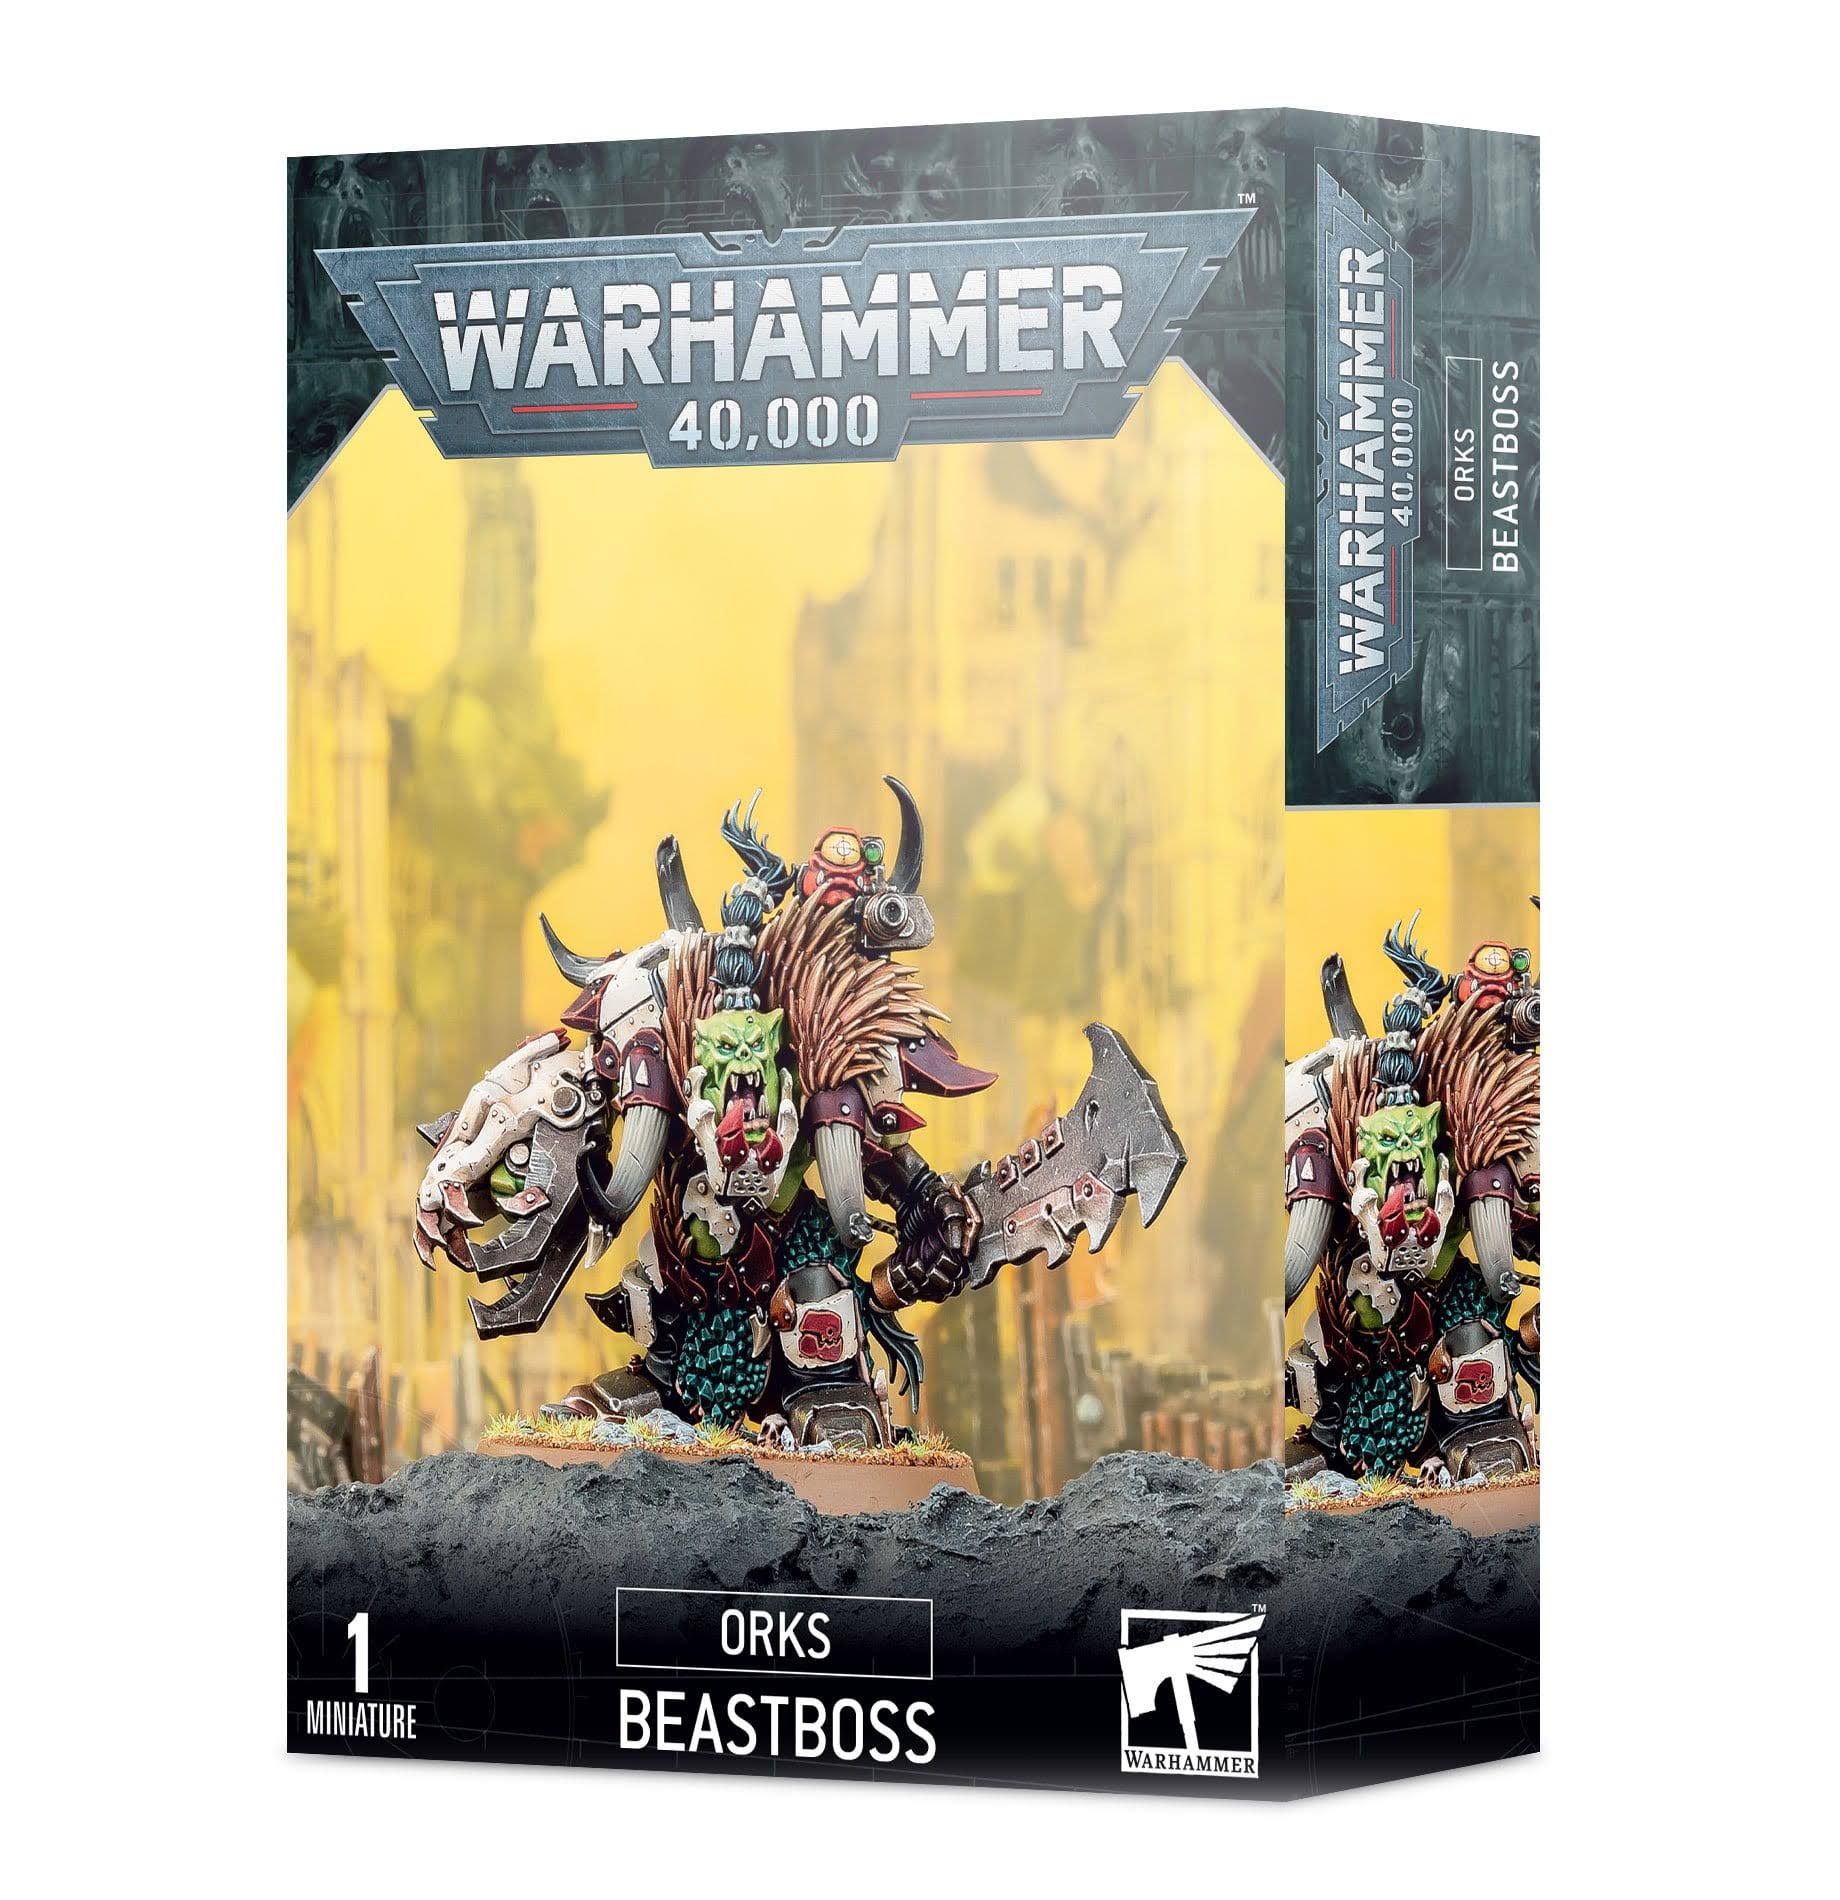 Warhammer 40,000 Orks Beastboss